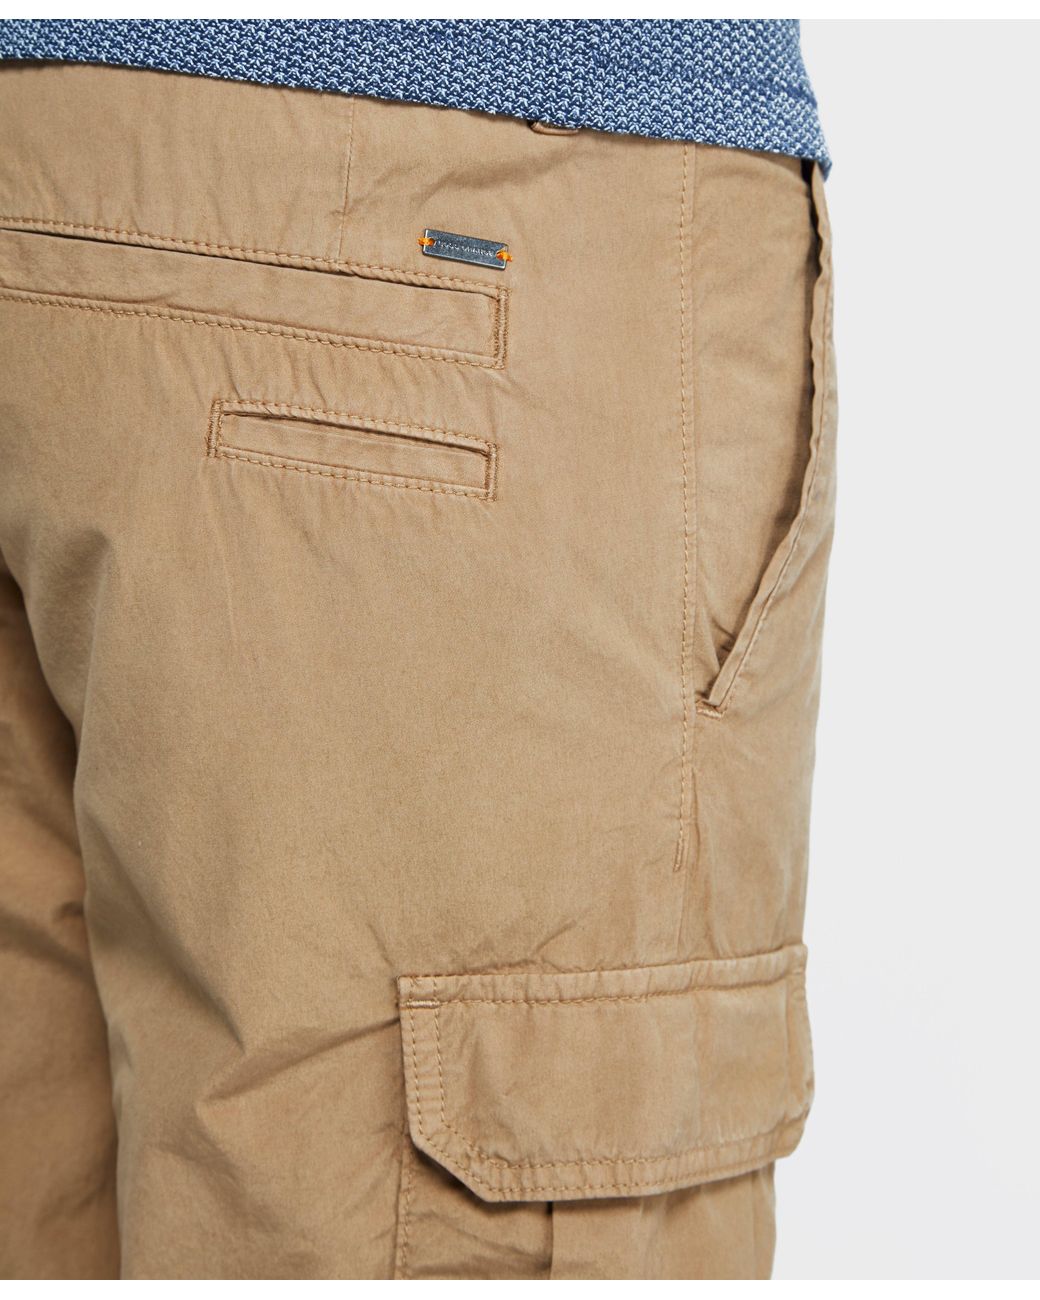 BOSS by HUGO BOSS Orange Cargo Shorts for Men | Lyst